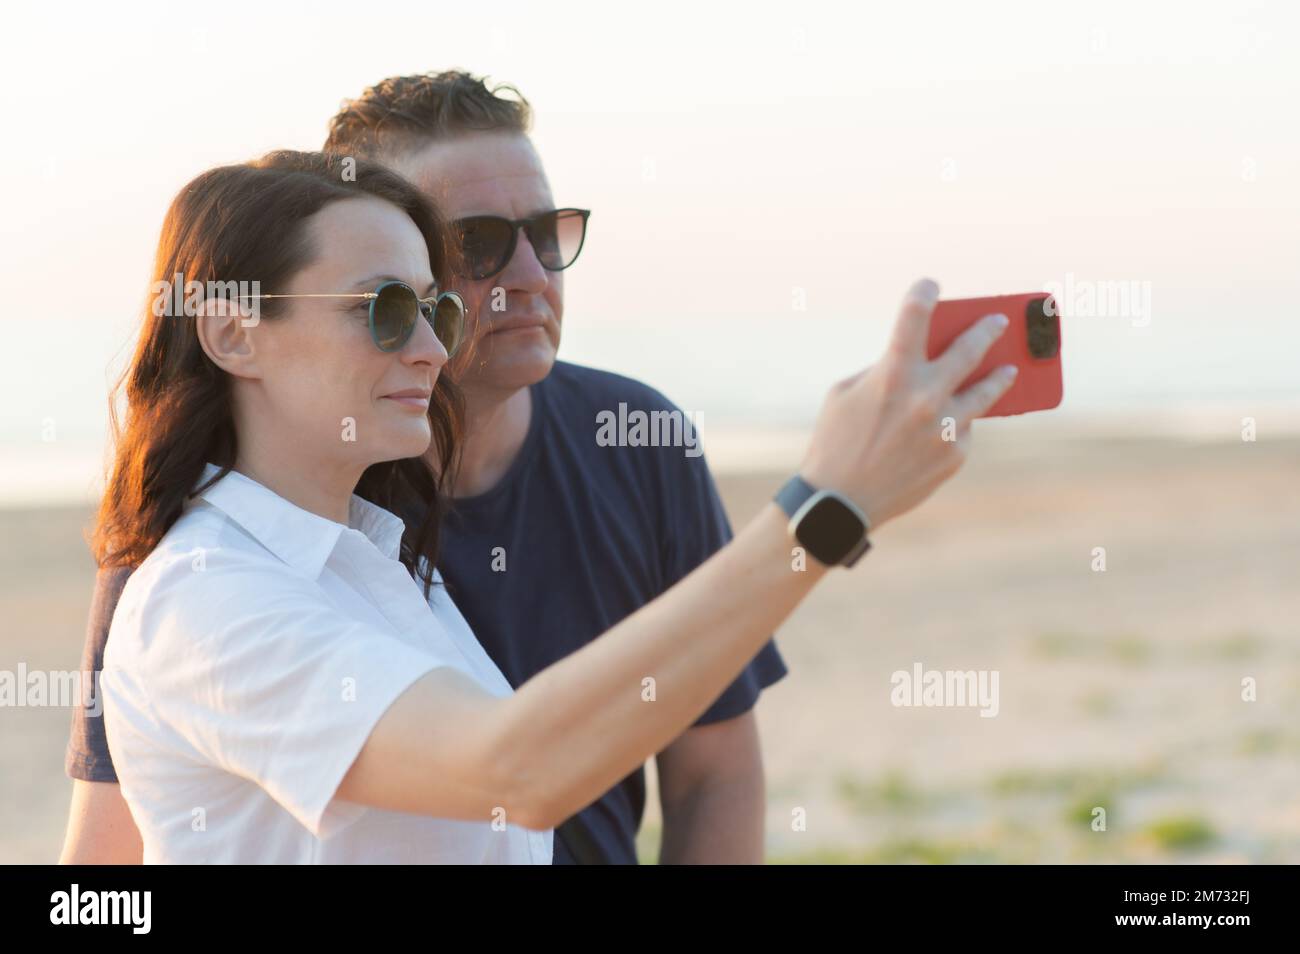 Coppia felice con differenza di età - una giovane donna e un uomo di mezza età prendono un selfie sulla spiaggia Foto Stock